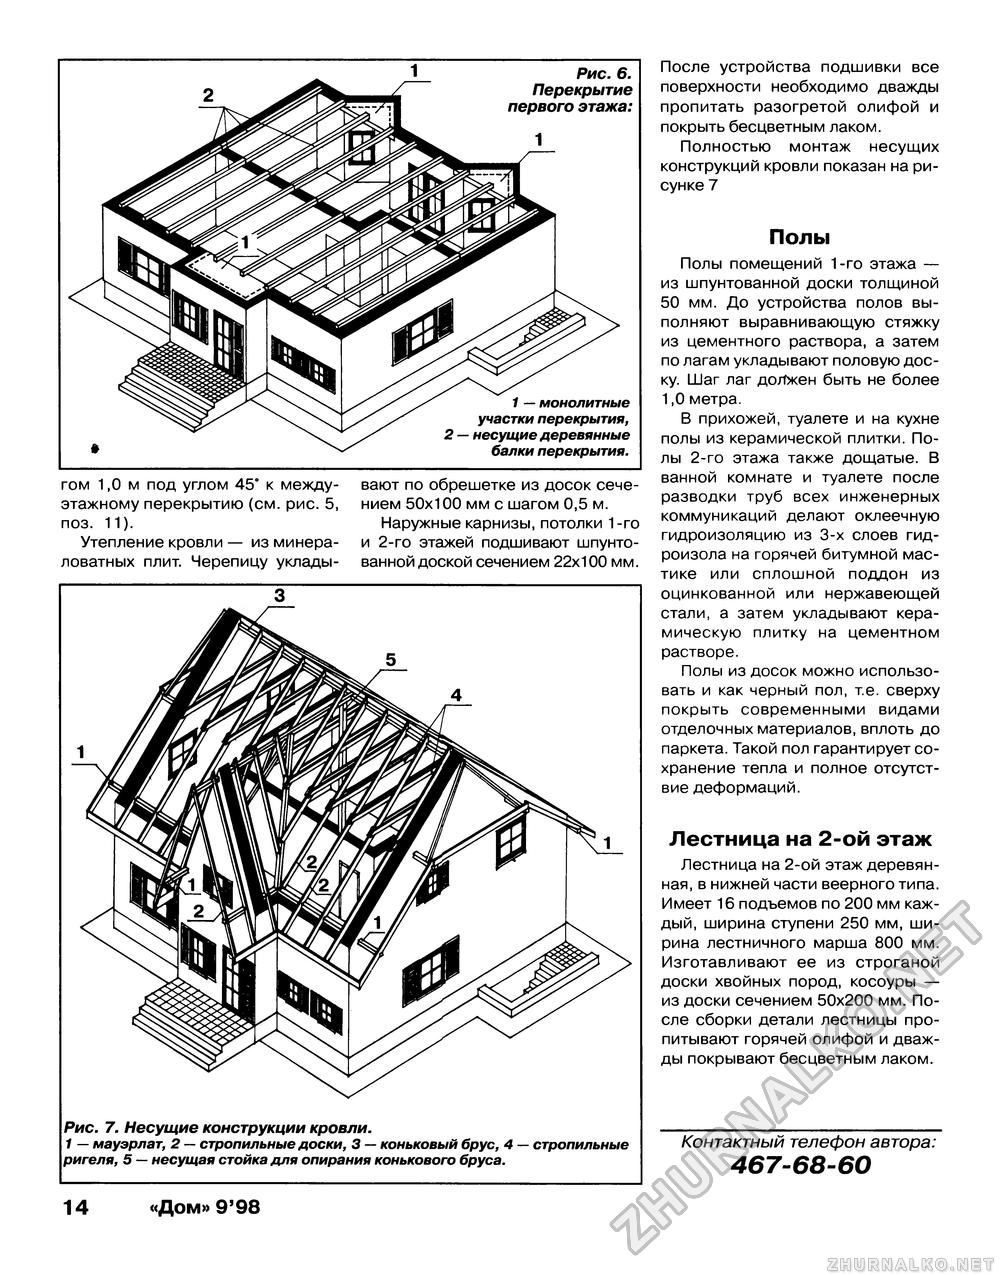 Дом 1998-09, страница 14